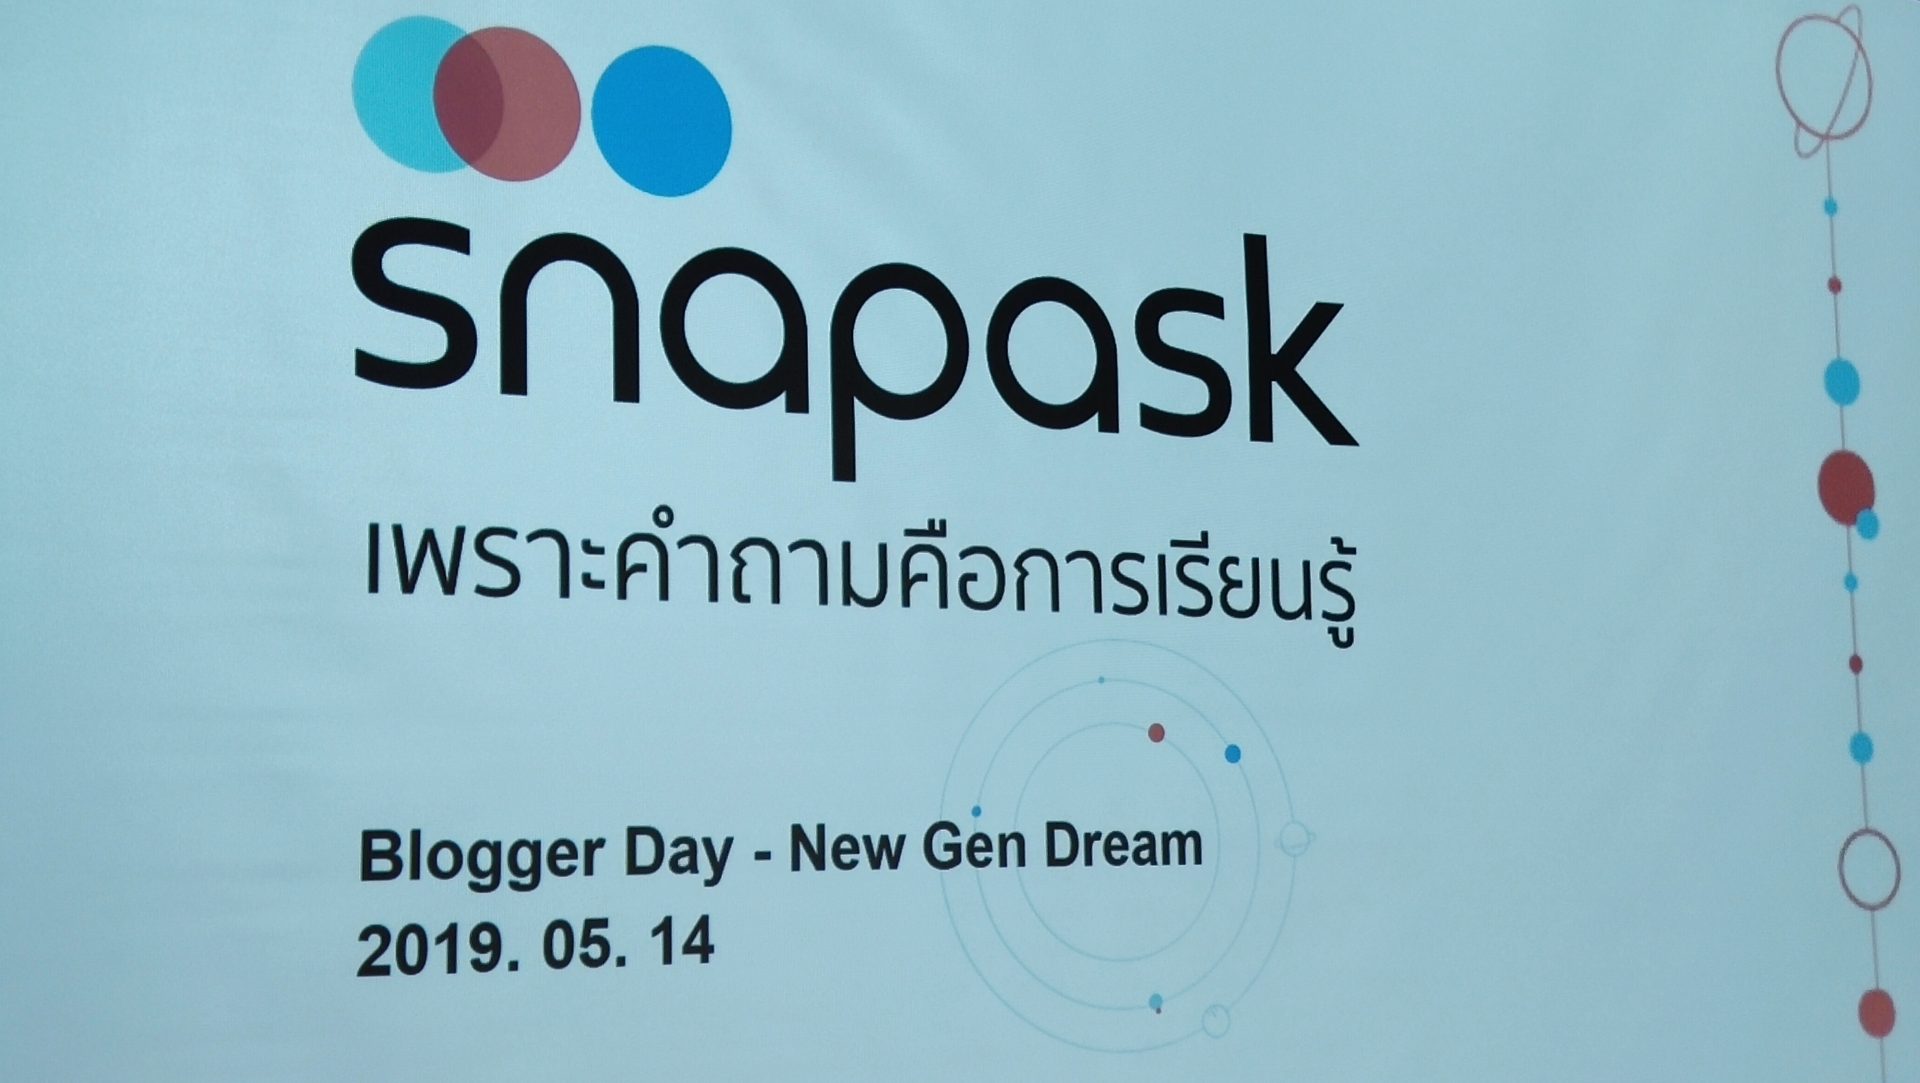 Snapask ประเทศไทย เปิดฟีเจอร์ใหม่เพื่อเด็กรักเรียน ตอบโจทย์การเรียนรู้แบบส่วนตัวมากขึ้น